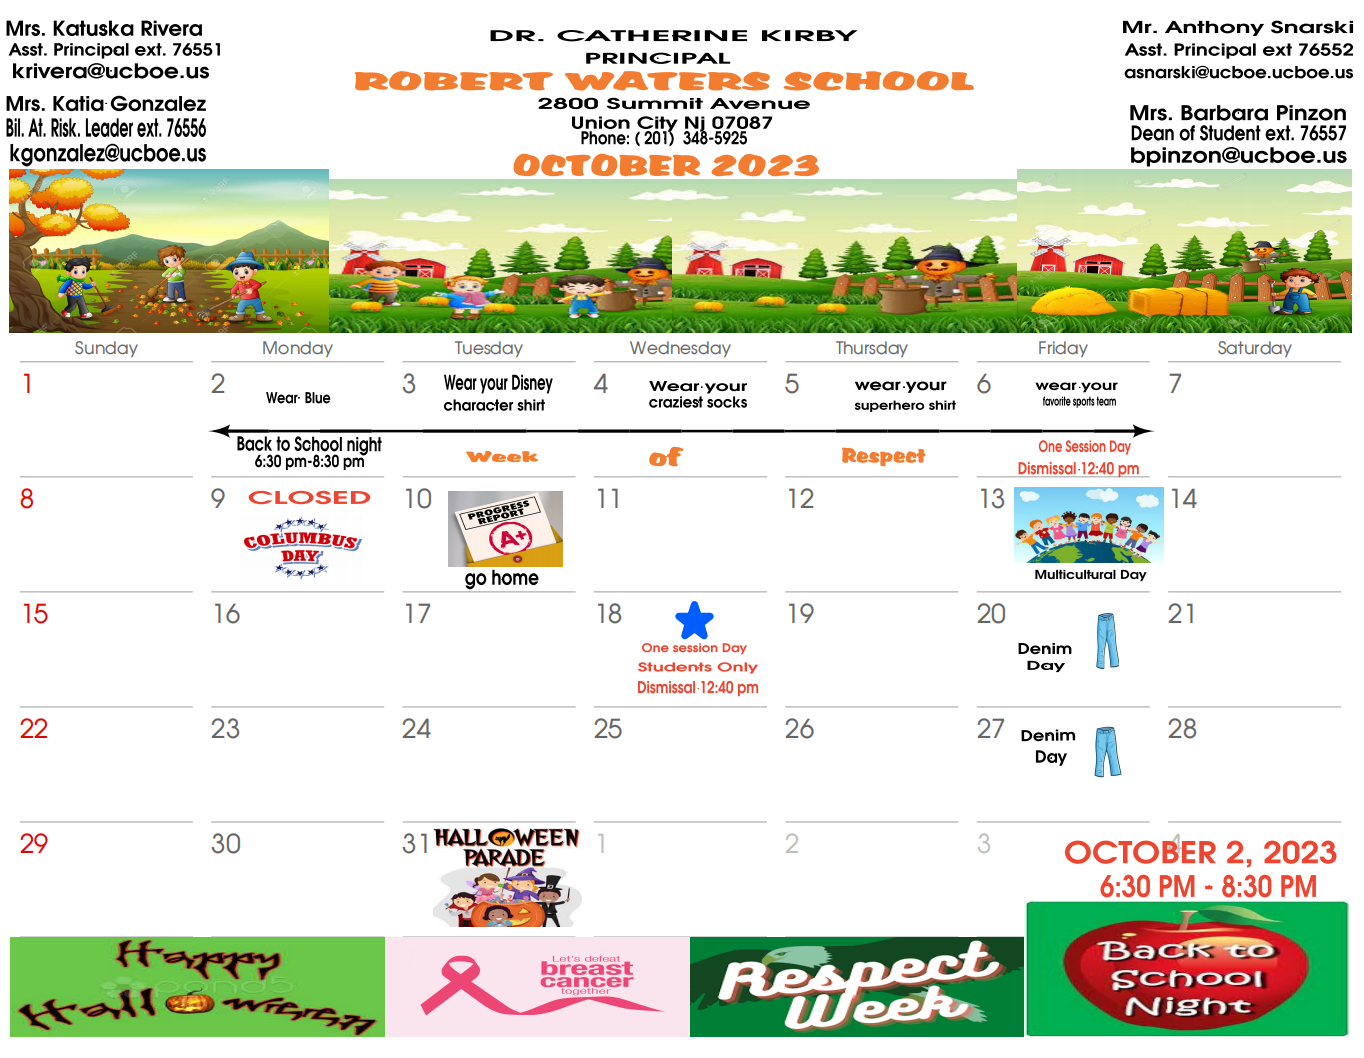 Robert Waters School-October 2023 Calendar